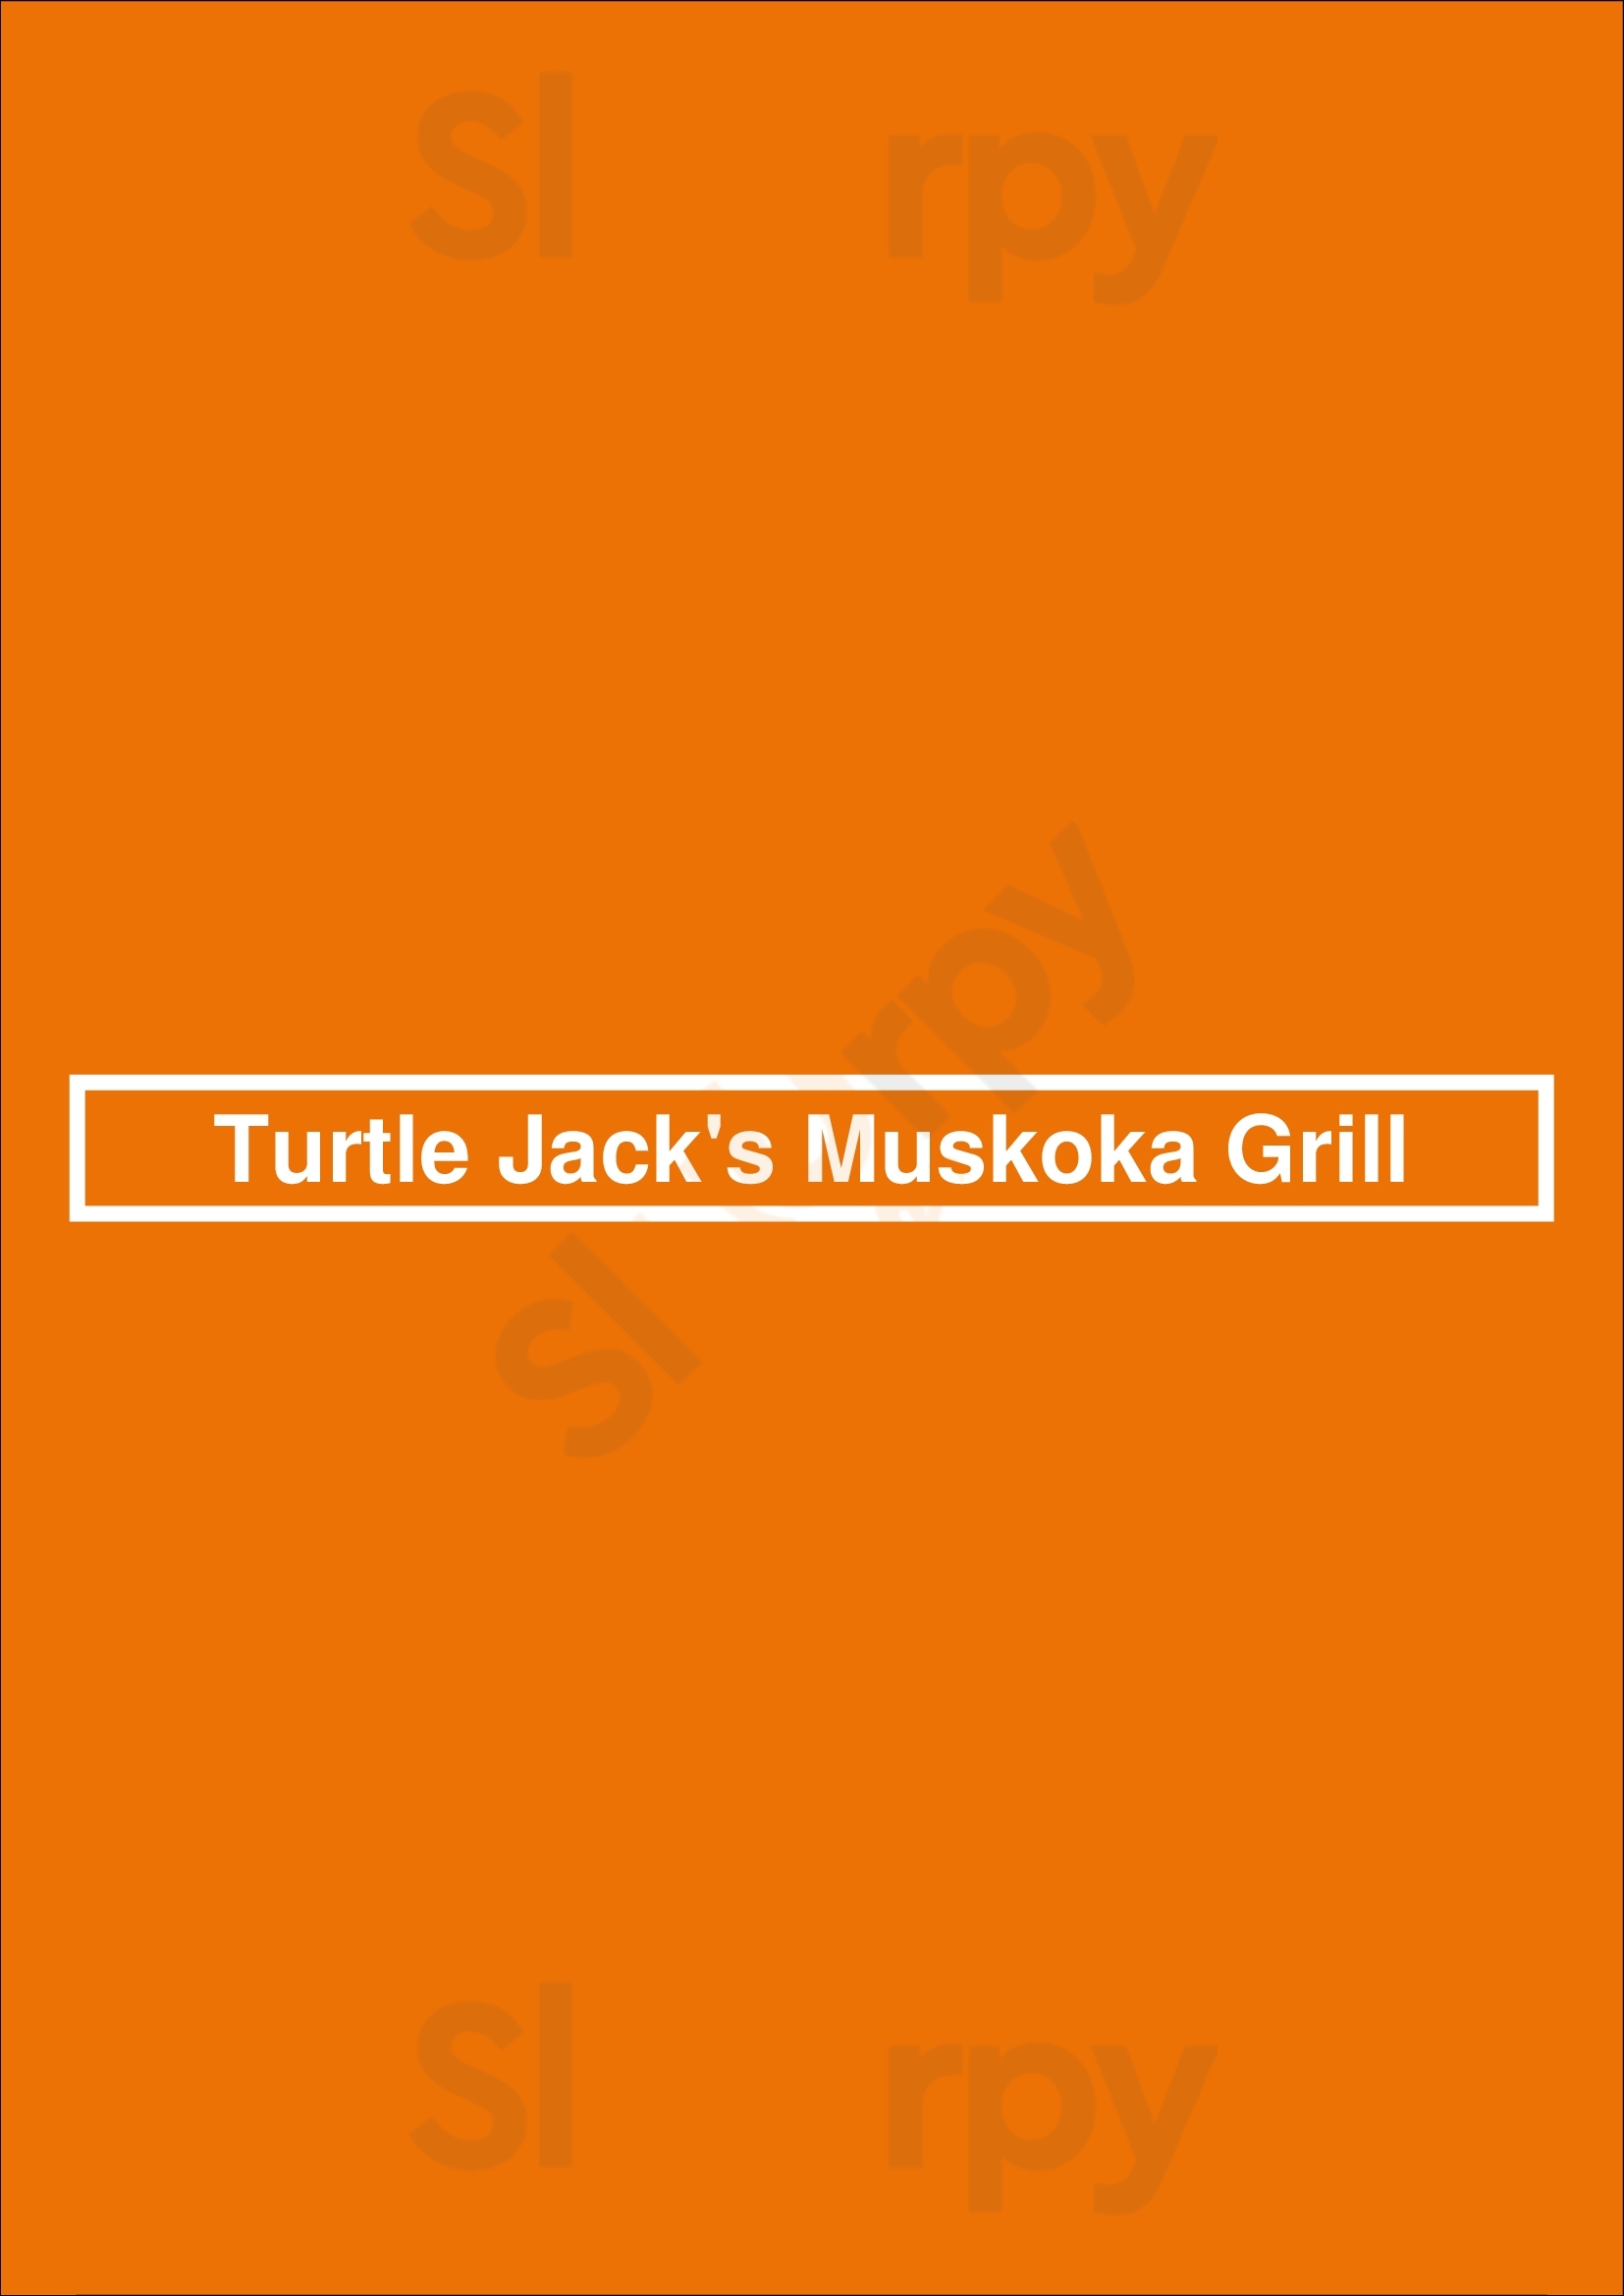 Turtle Jack's Mapleview Burlington Menu - 1